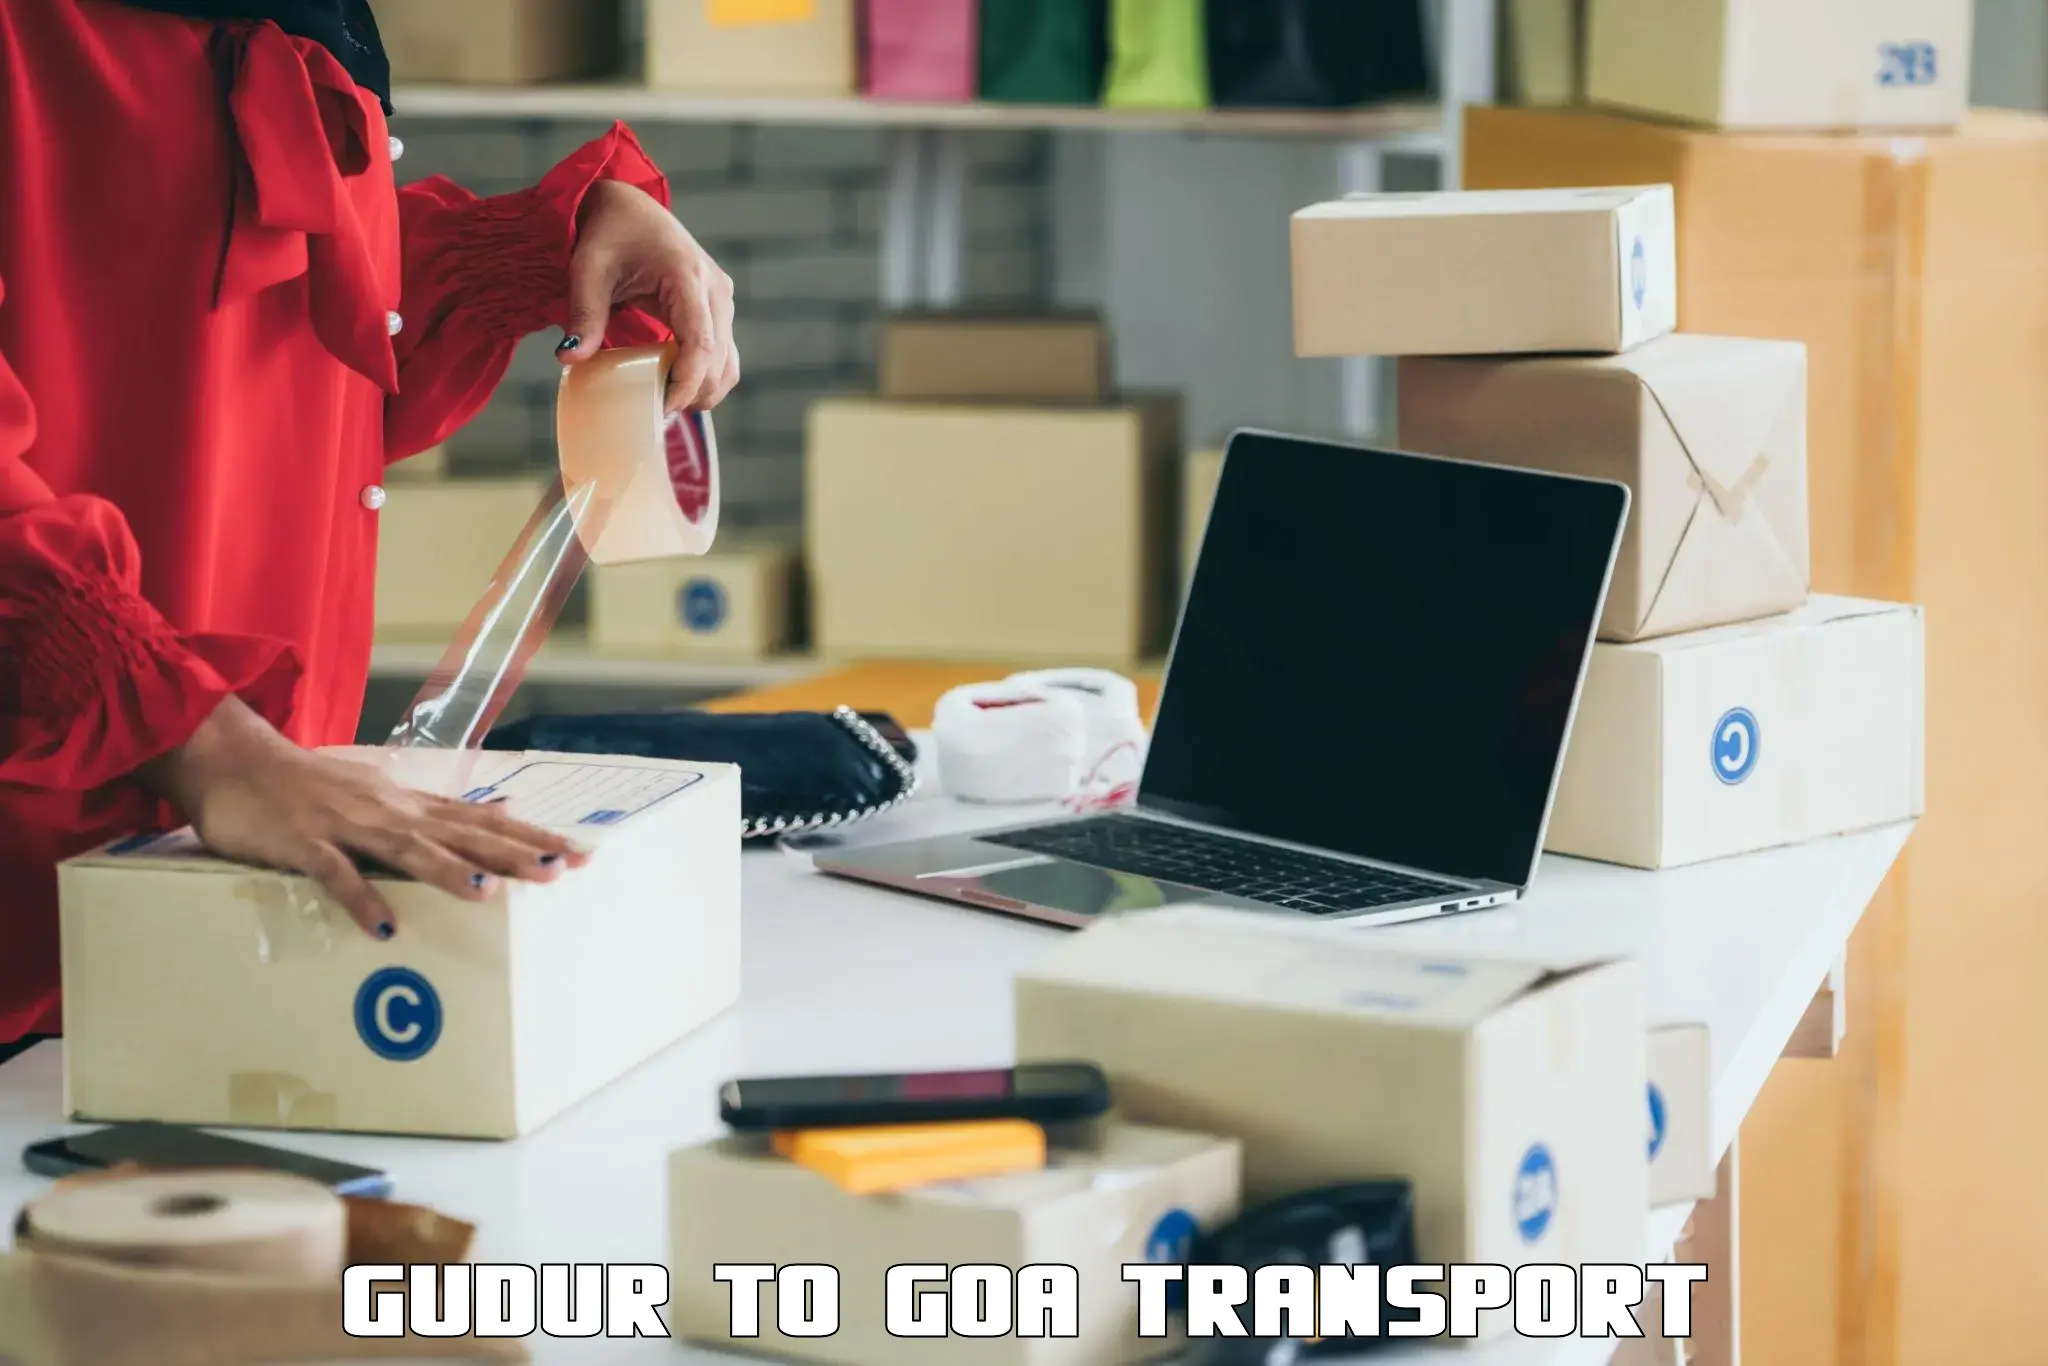 Transportation solution services Gudur to Mormugao Port